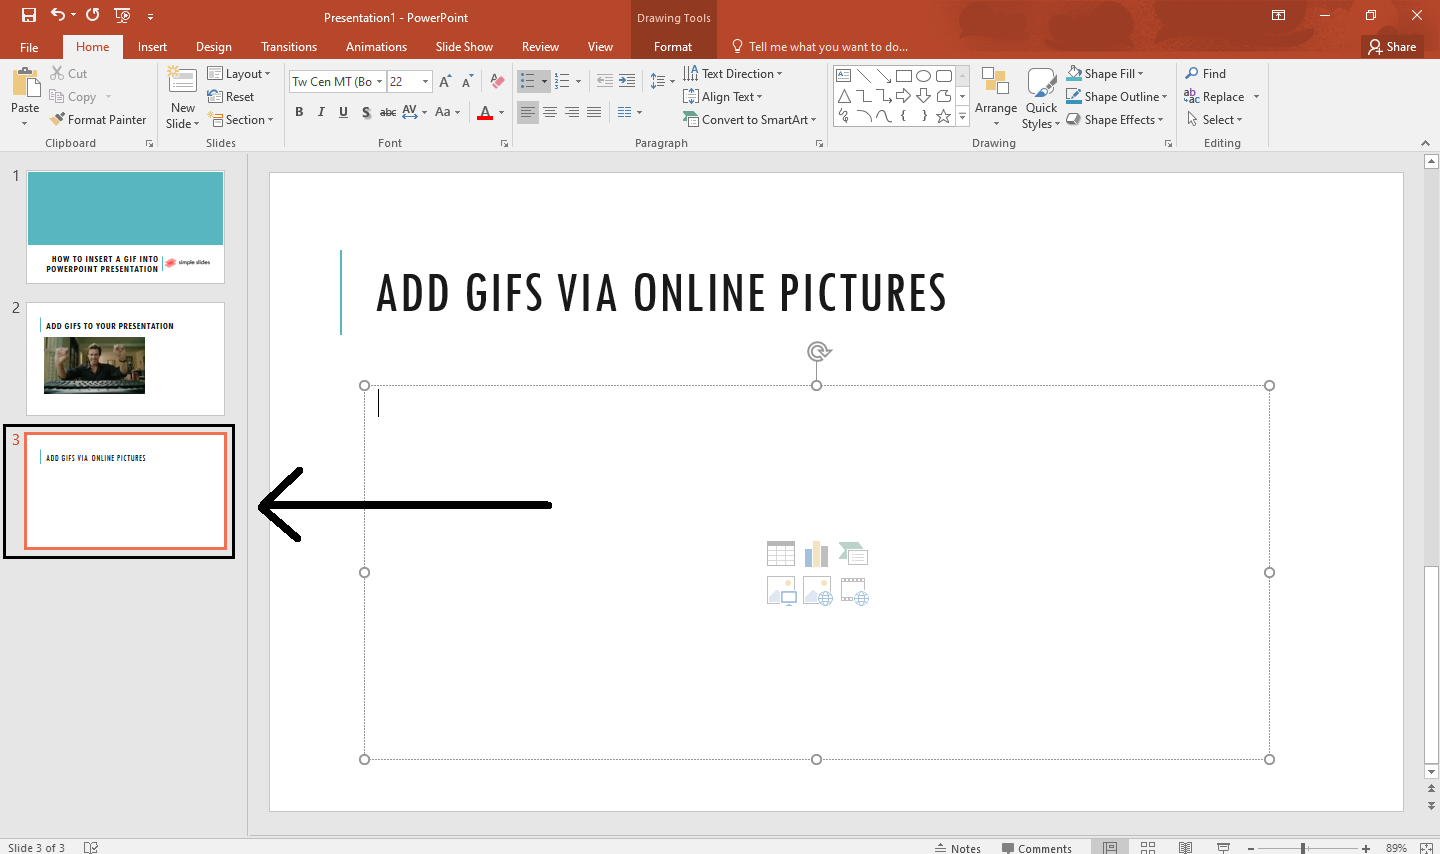 Como adicionar arquivos GIF a vídeos - Suporte da Microsoft